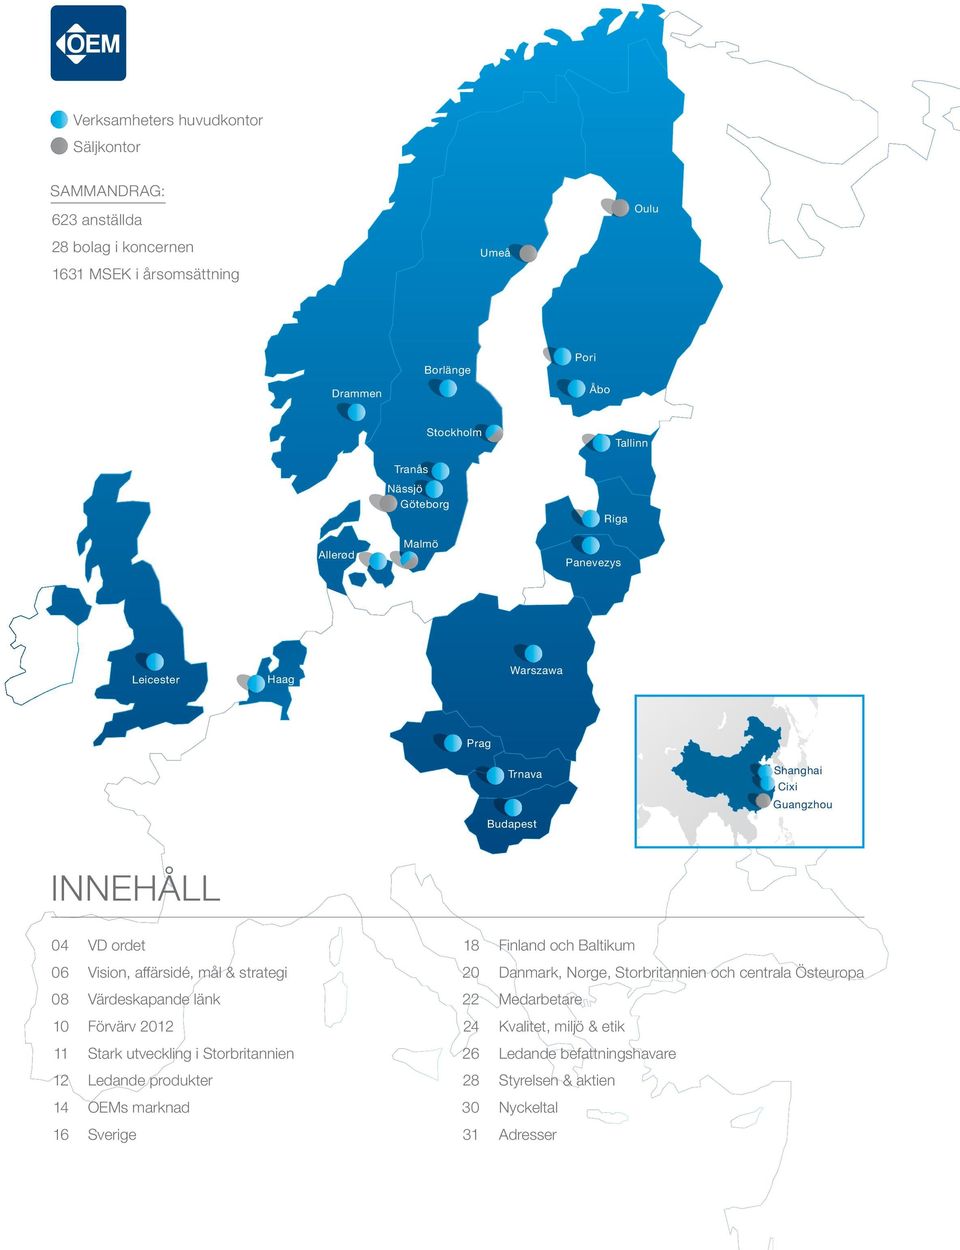 Baltikum 06 Vision, affärsidé, mål & strategi 20 Danmark, Norge, Storbritannien och centrala Östeuropa 08 Värdeskapande länk 22 Medarbetare 10 Förvärv 2012 24